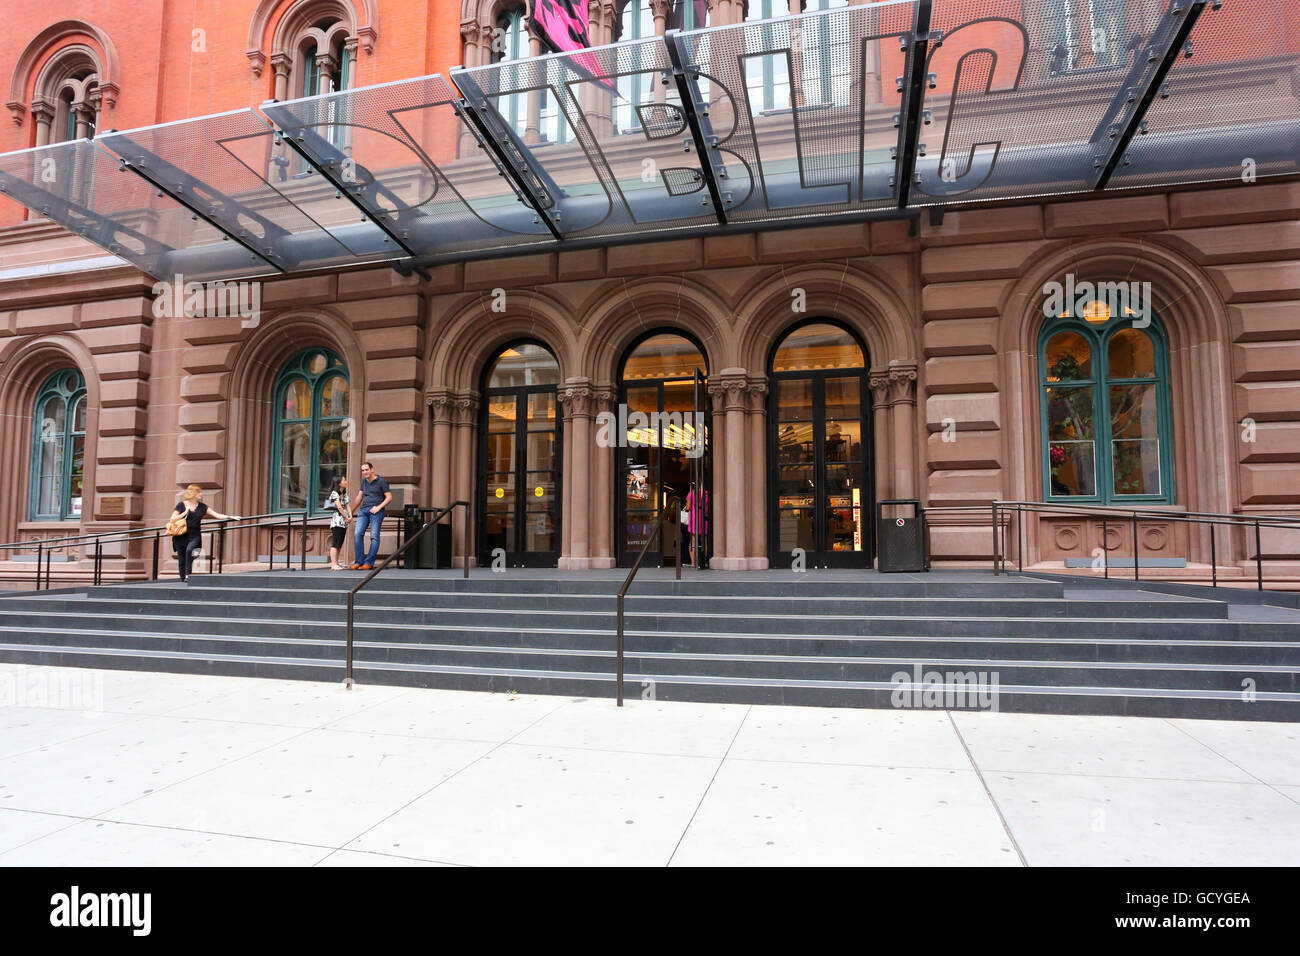 The Public Theater, New York, NY. Stock Photo